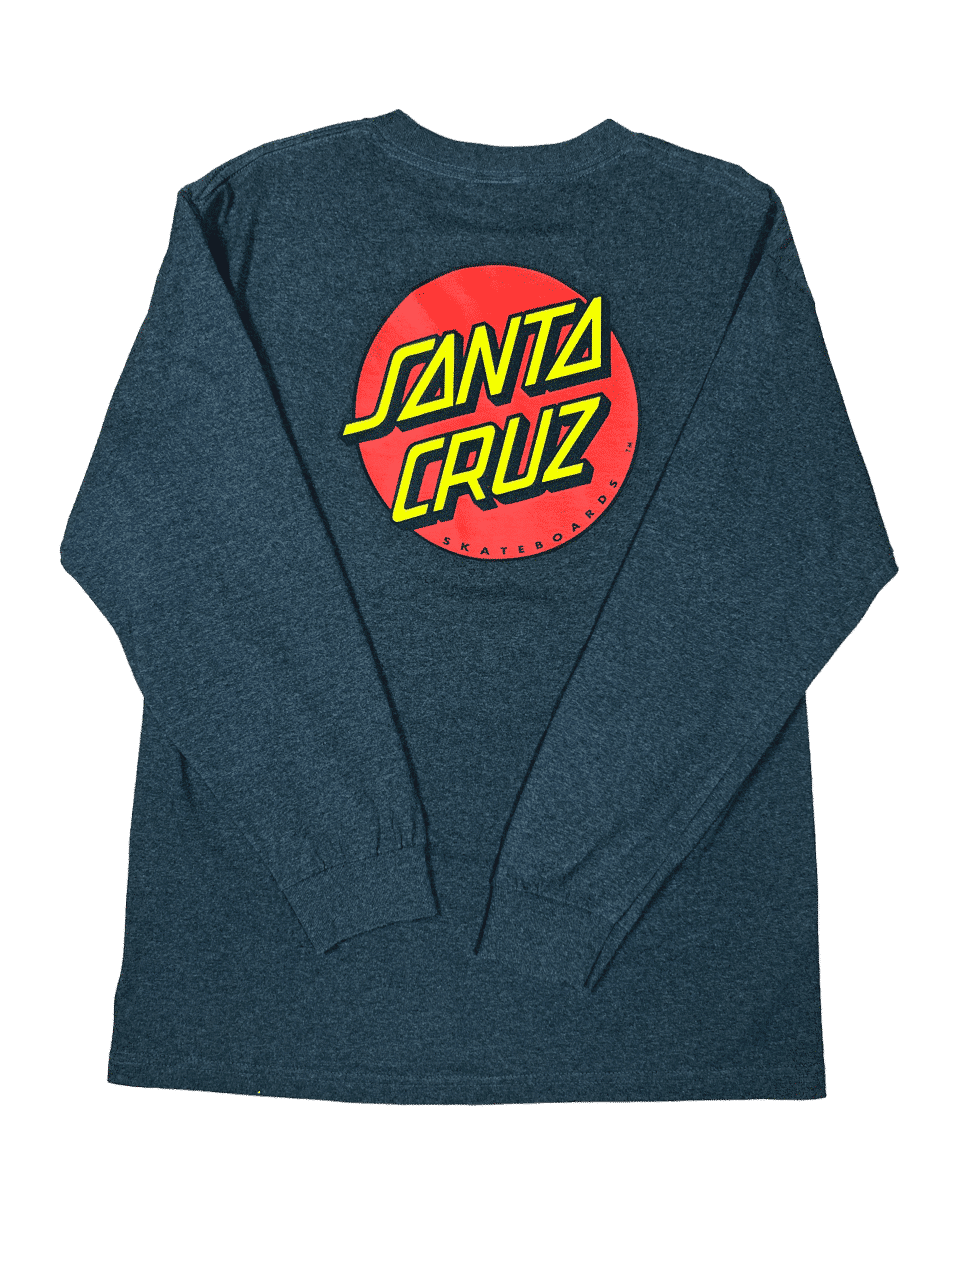 Bluzka Santa Cruz Szara Długi Rękaw